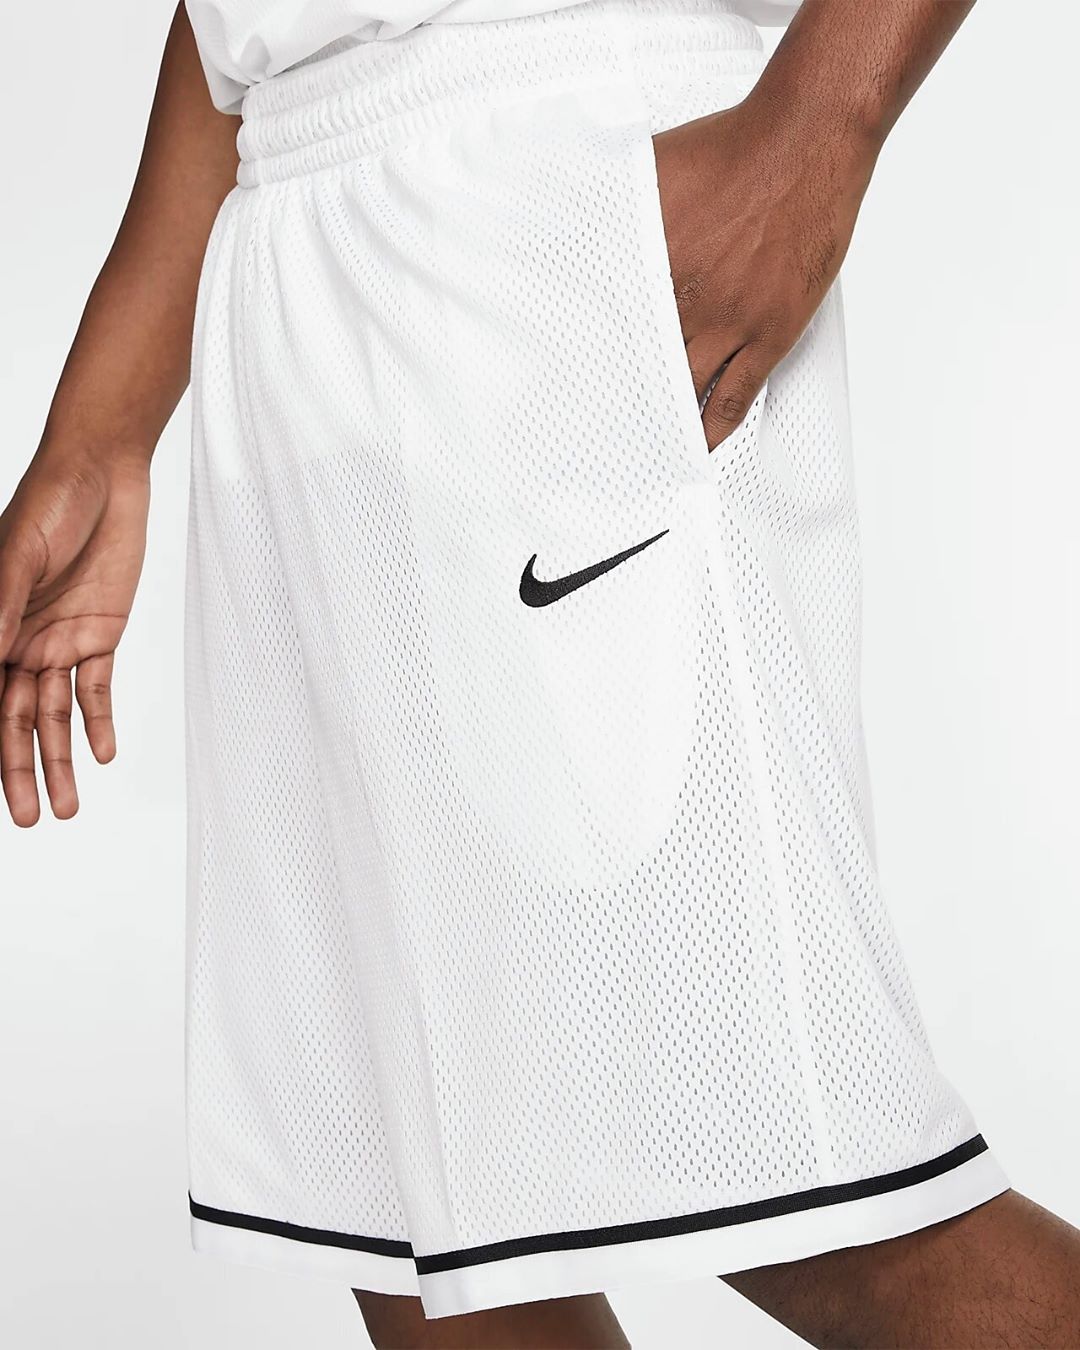 KICKZ4U.RU - всё для баскета🏀 - Баскетбольные шорты Nike Dri-FIT ⠀⁣⠀⁣
⠀⁣⁣
⁣🩳 Размеры от M до XL⁣
⁣✅ Было 2 790 руб.⁣
⁣⁣🚚 ДОСТАВКА 3-7 ДНЕЙ⠀⁣⠀⁣
⠀⁣⁣
⁣Для заказа, напишите под постом "Хочу купить"👇 и мы...